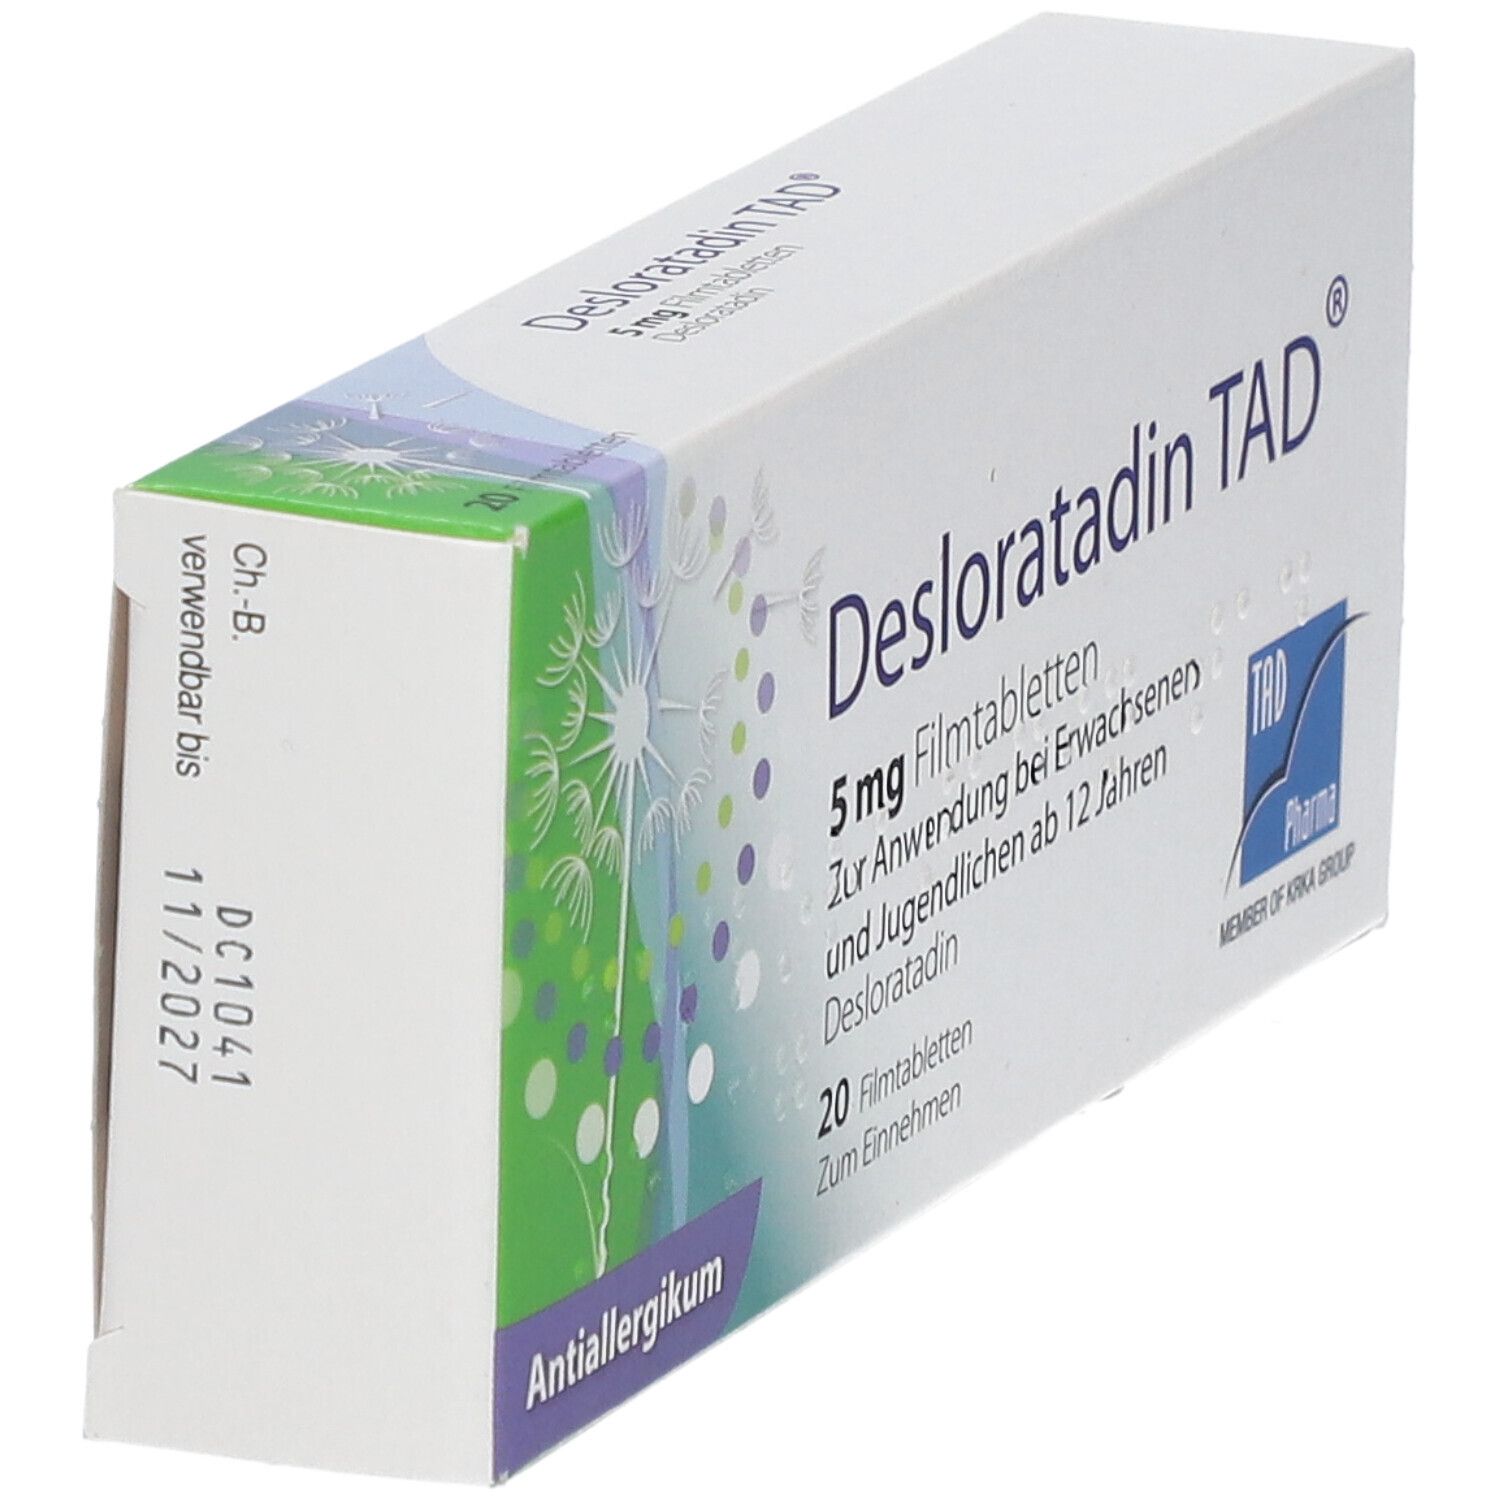 Desloratadin TAD® 5 mg Filmtabletten